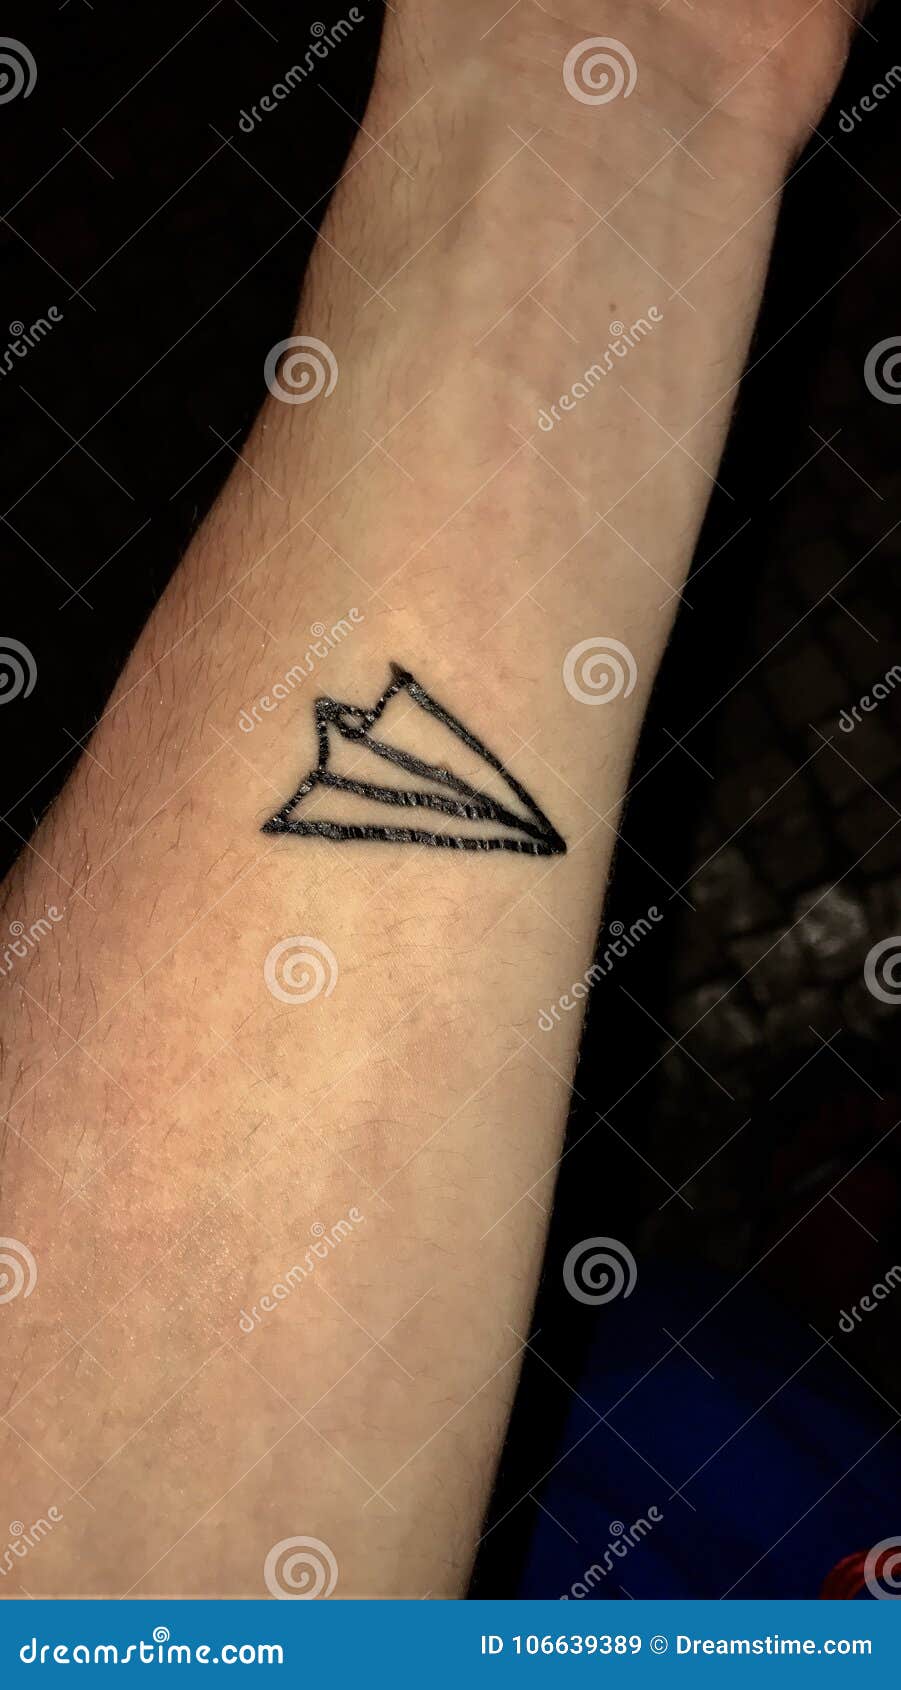 Minimalist airplane tattoo on the wrist